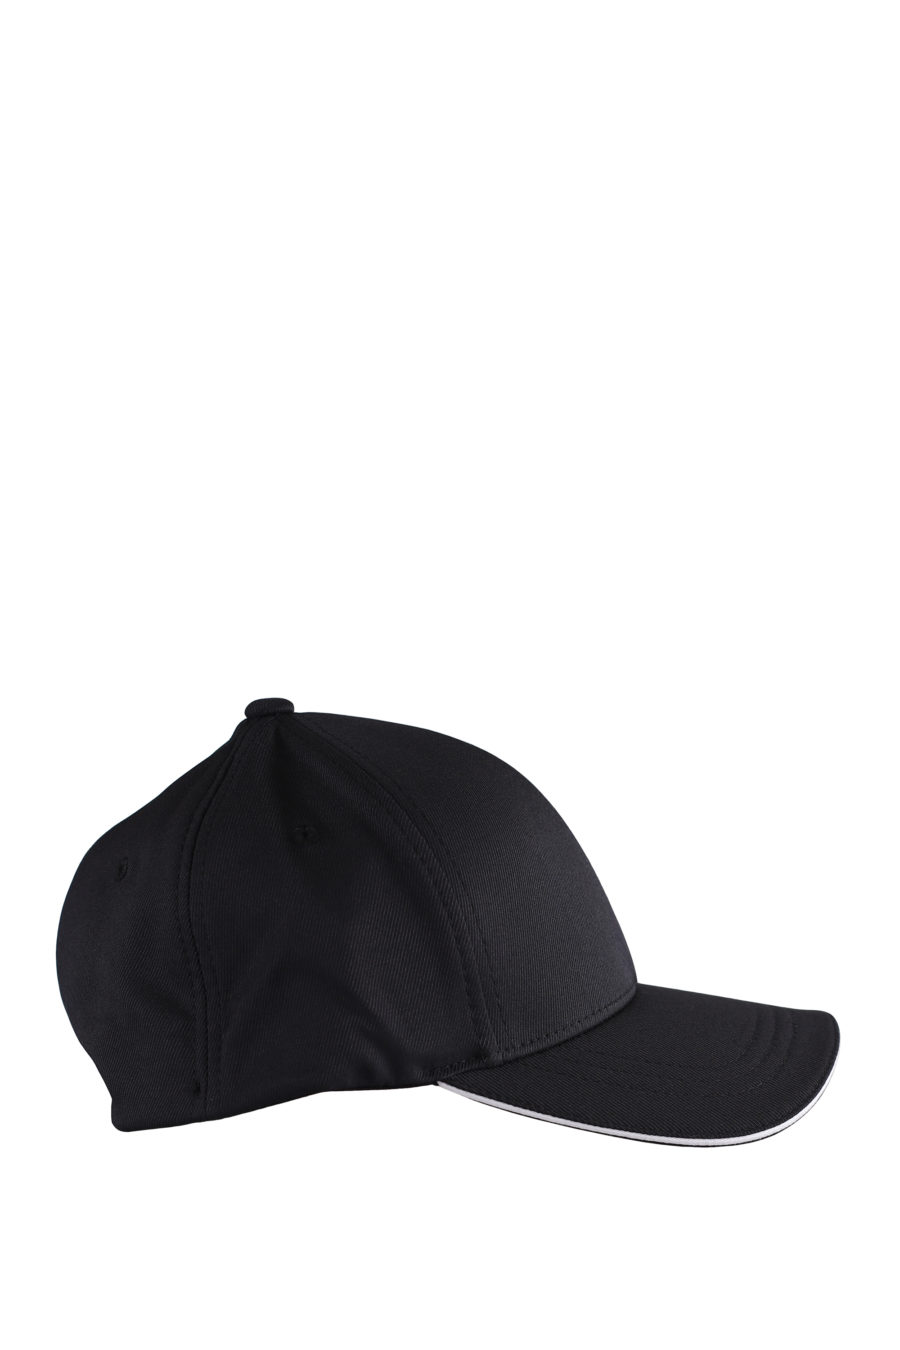 Black cap with white "Karl" logo - IMG 9595